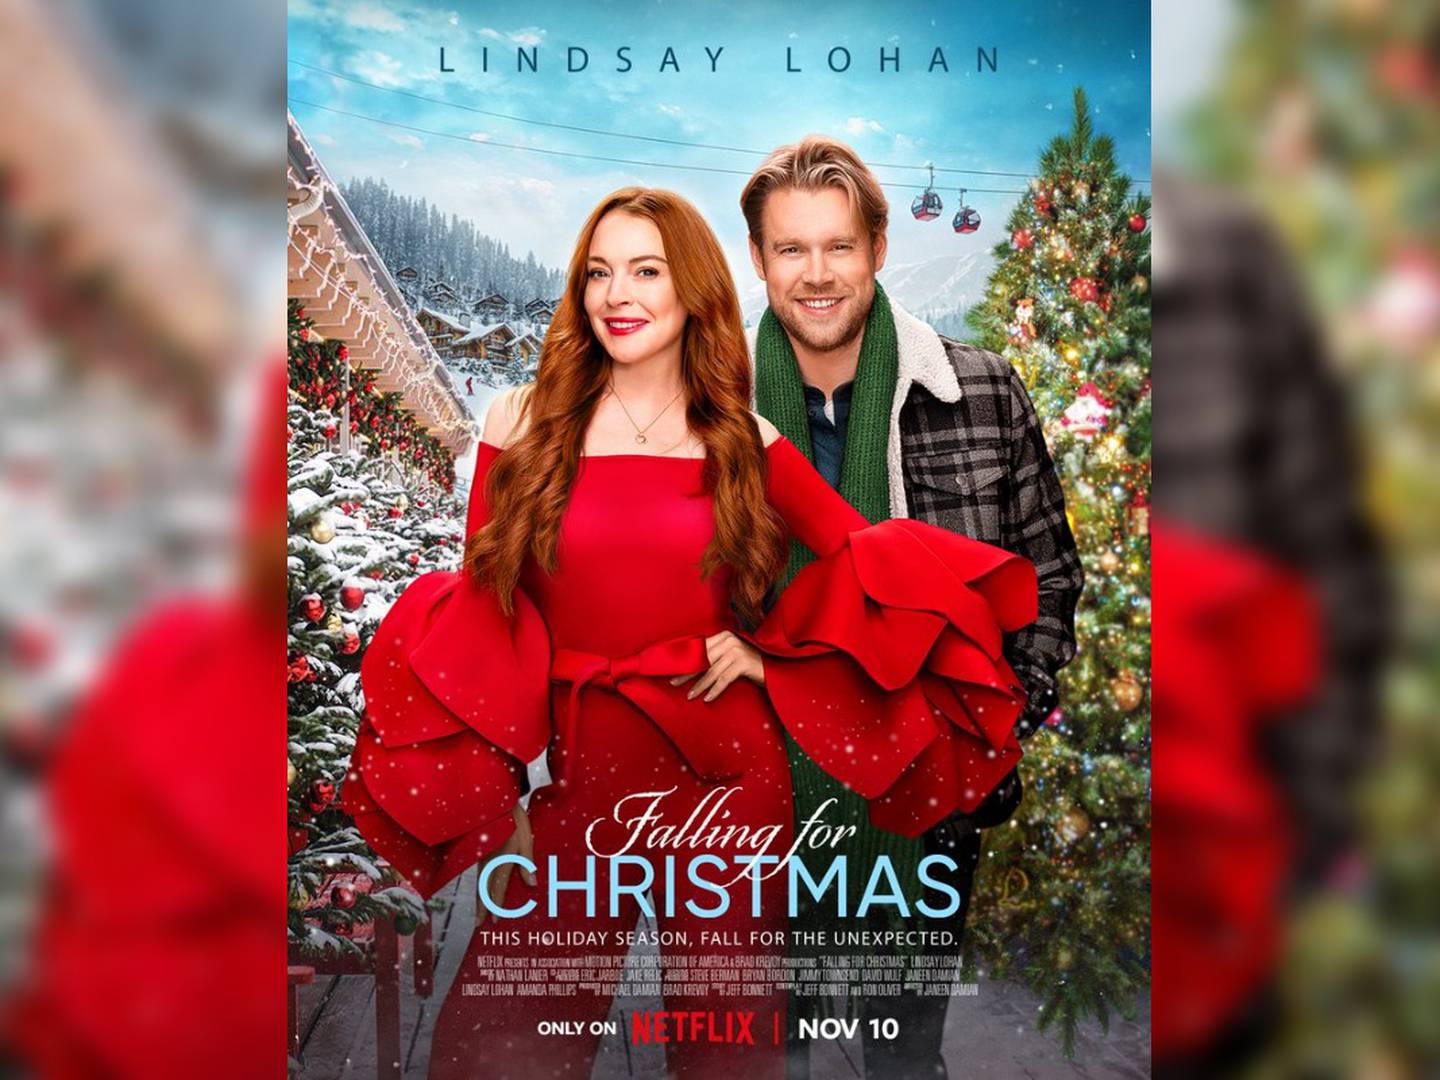 Novo filme de Lindsay Lohan, 'Uma Quedinha de Natal', ganha data de estreia